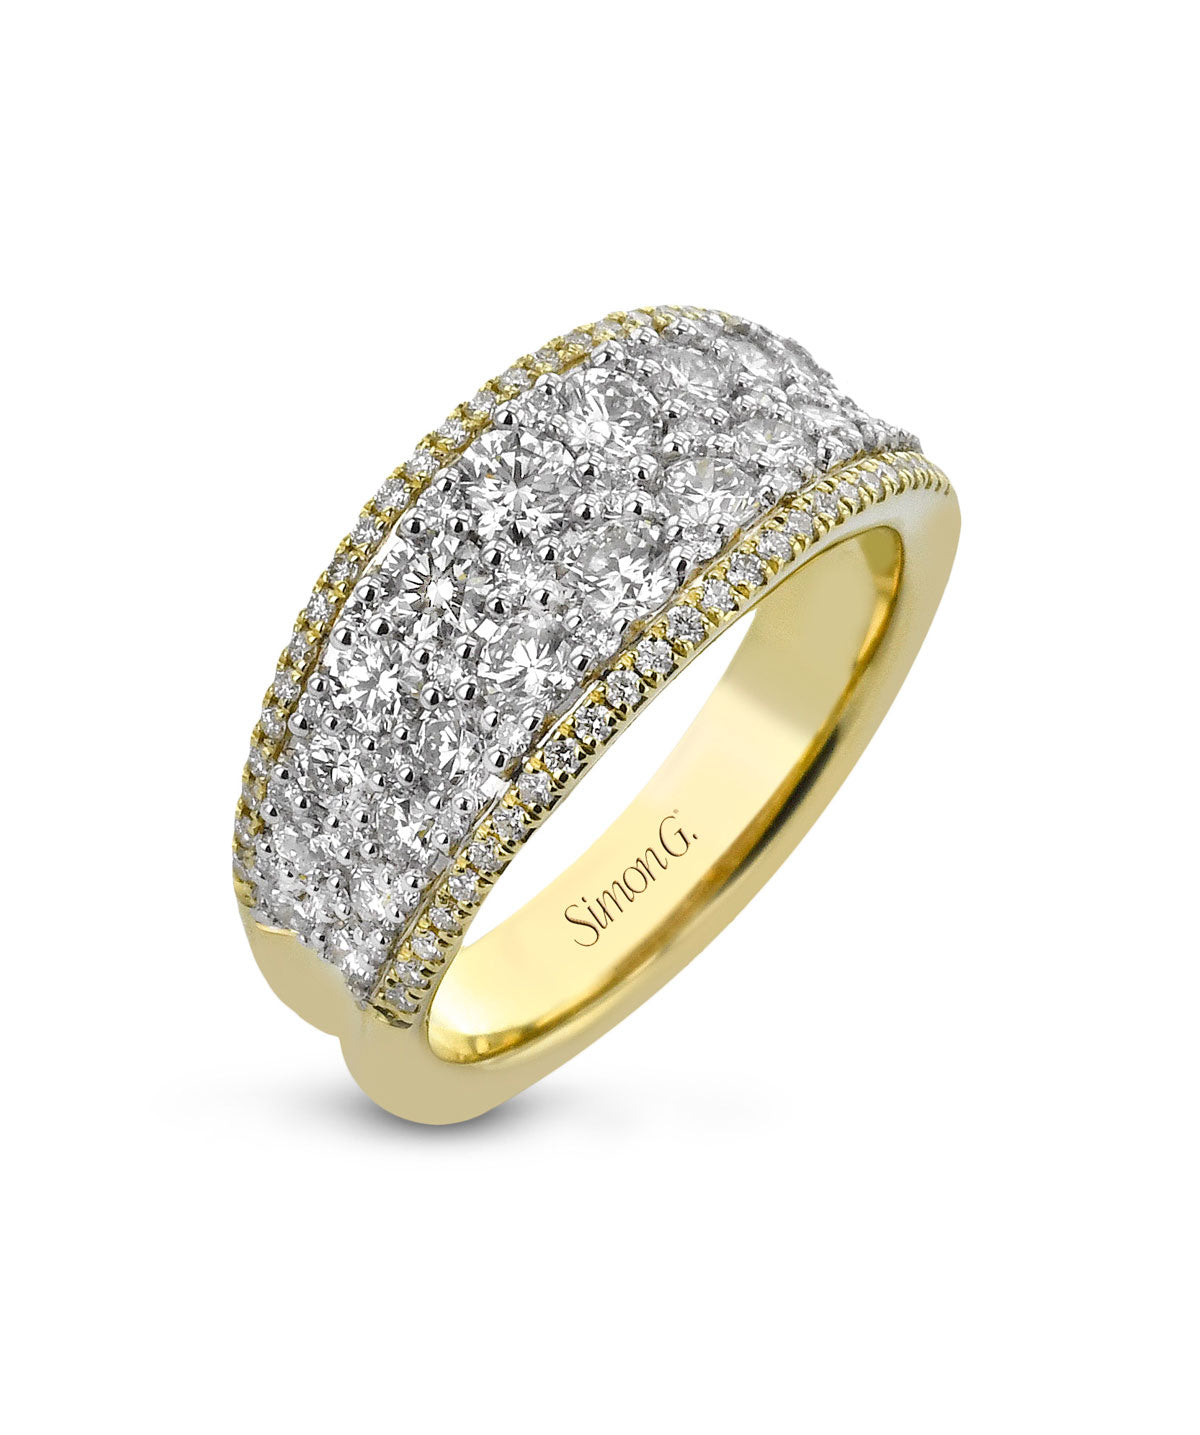 Simon G. 18K Yellow & White Gold Diamond Fashion Ring